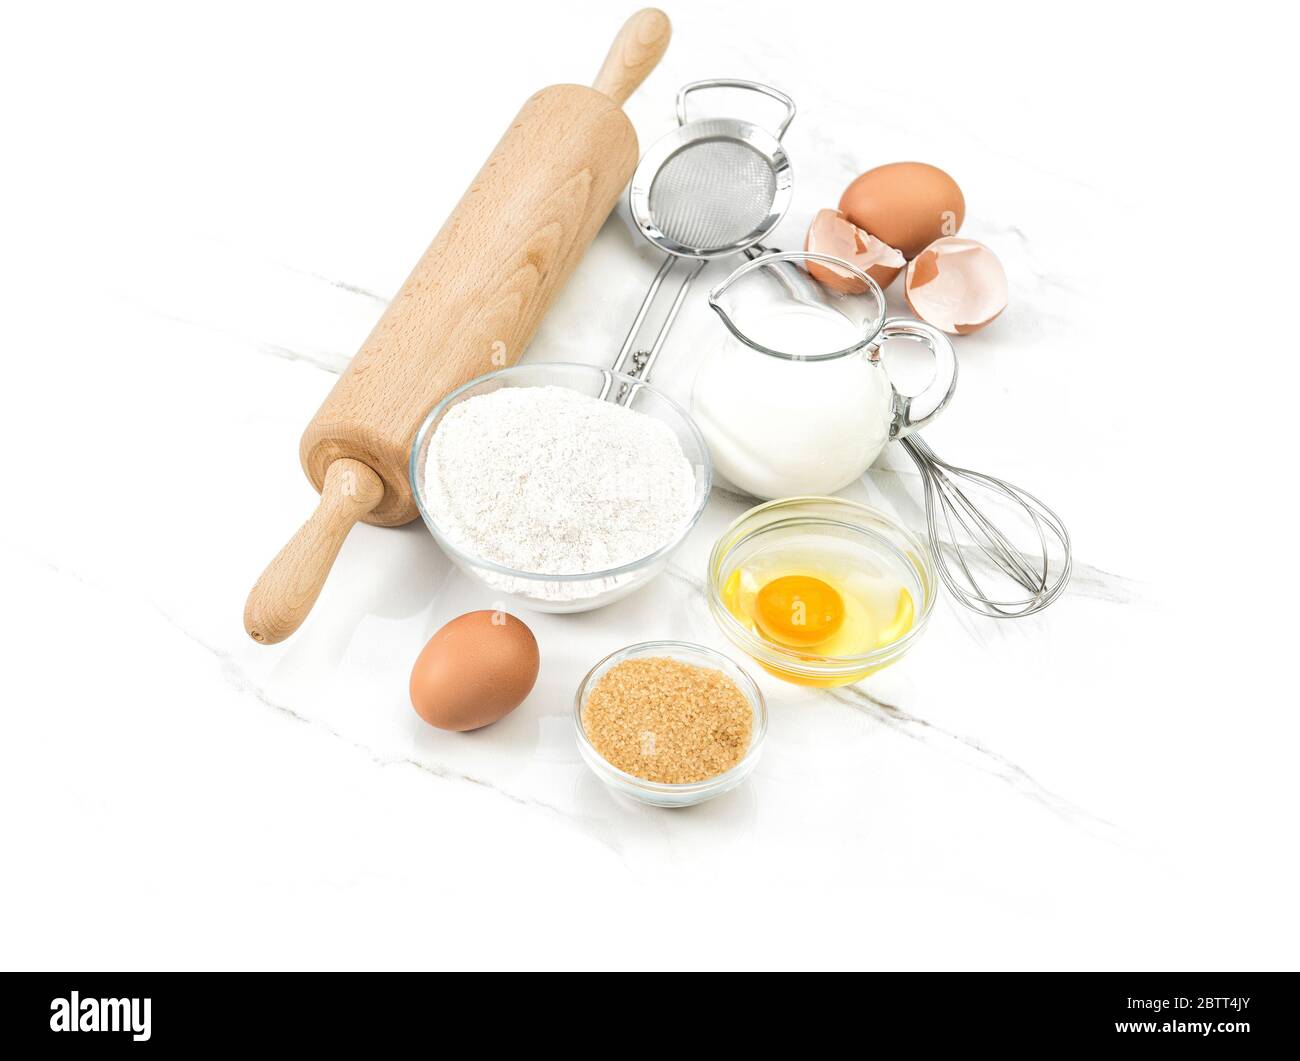 Ingredienti alimentari uova, farina, zucchero, latte. Utensili da cucina. Preparazione dell'impasto Foto Stock